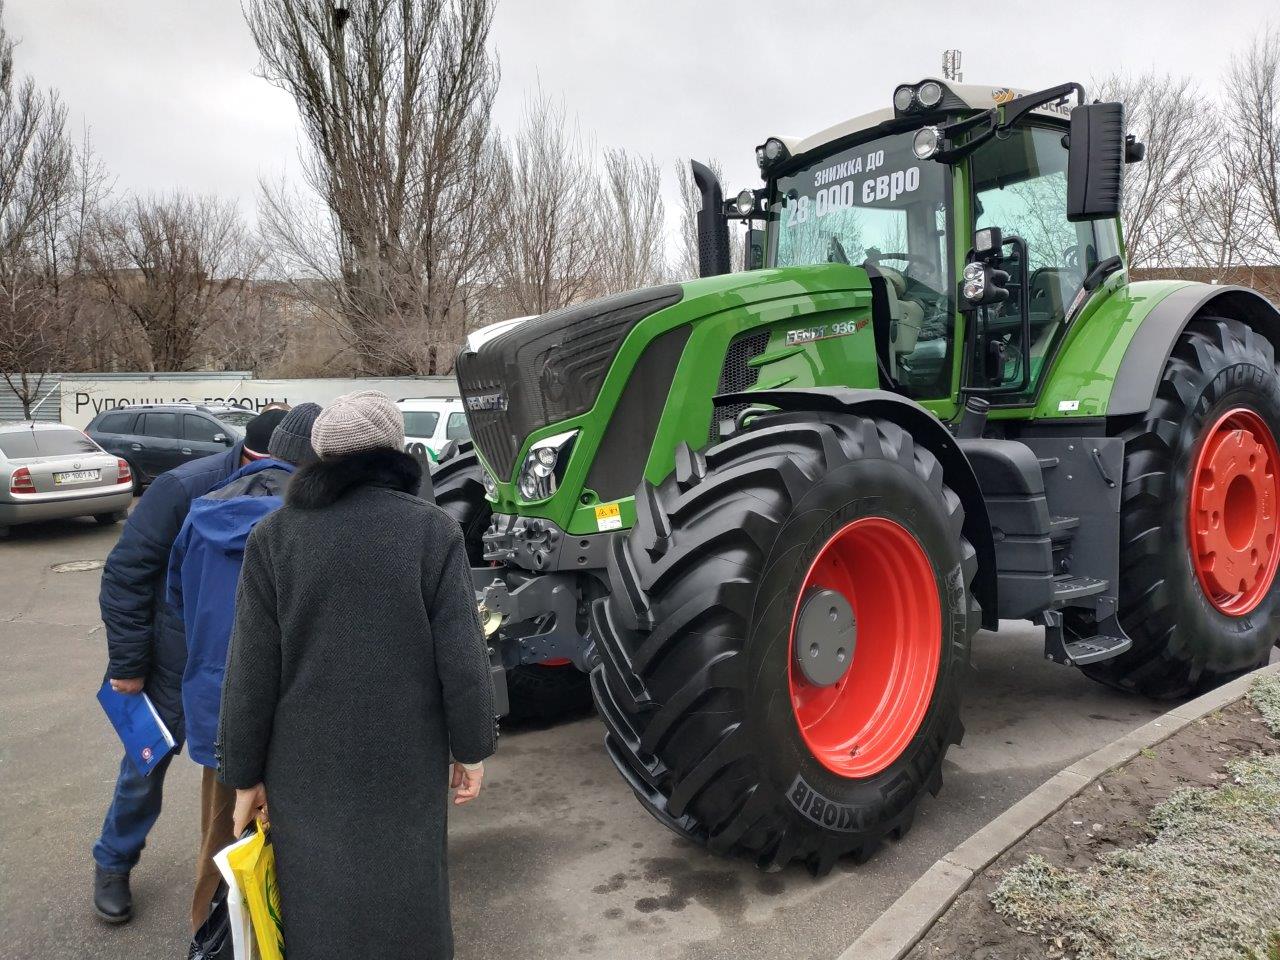 трактор Фендт 360 л.с. со скидкой до 28000 евро от агроспейс на выставке Агропром 2019, Днепр